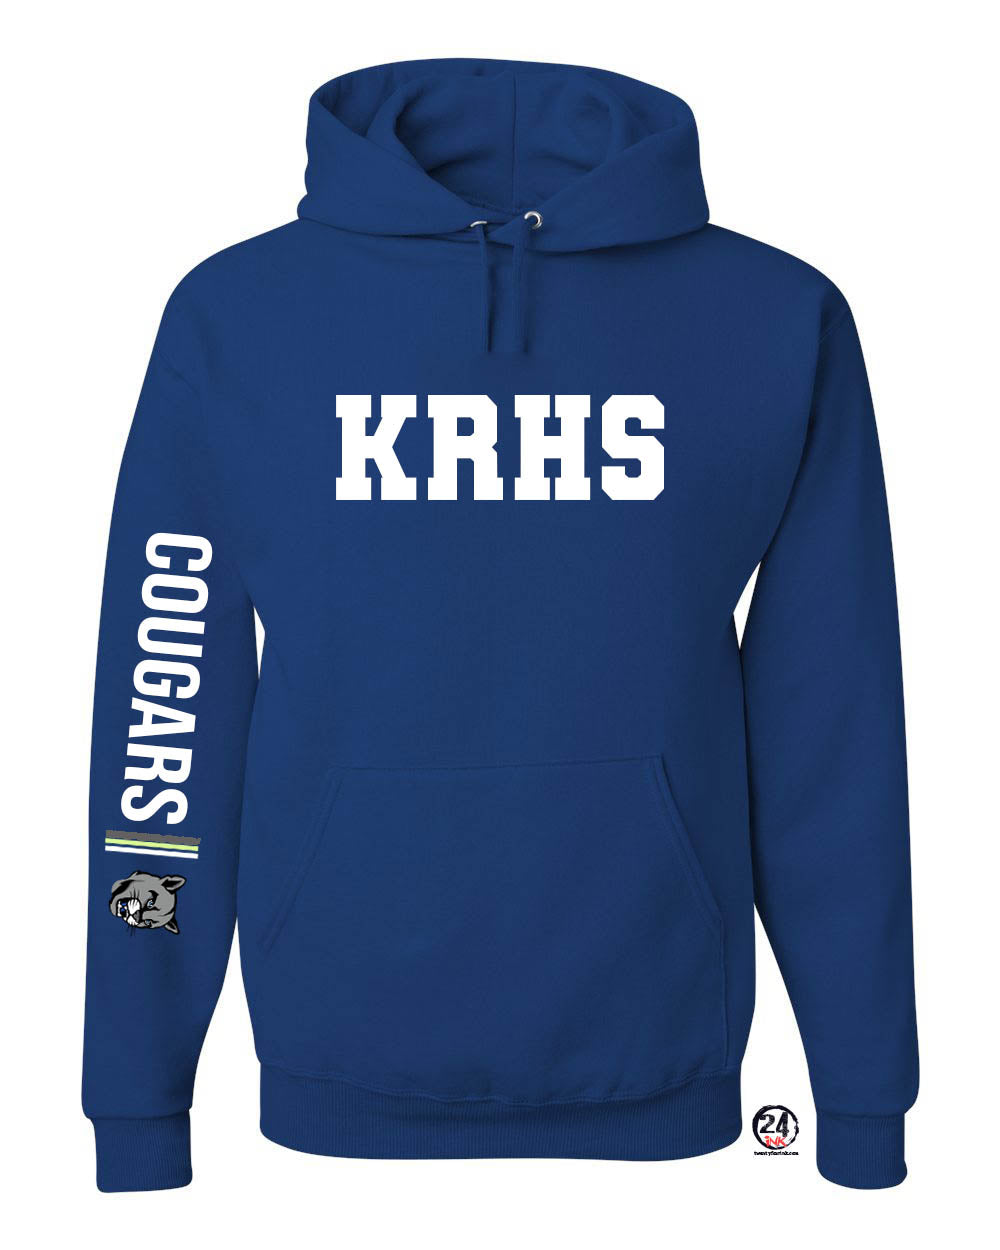 KRHS Design 5 Hooded Sweatshirt